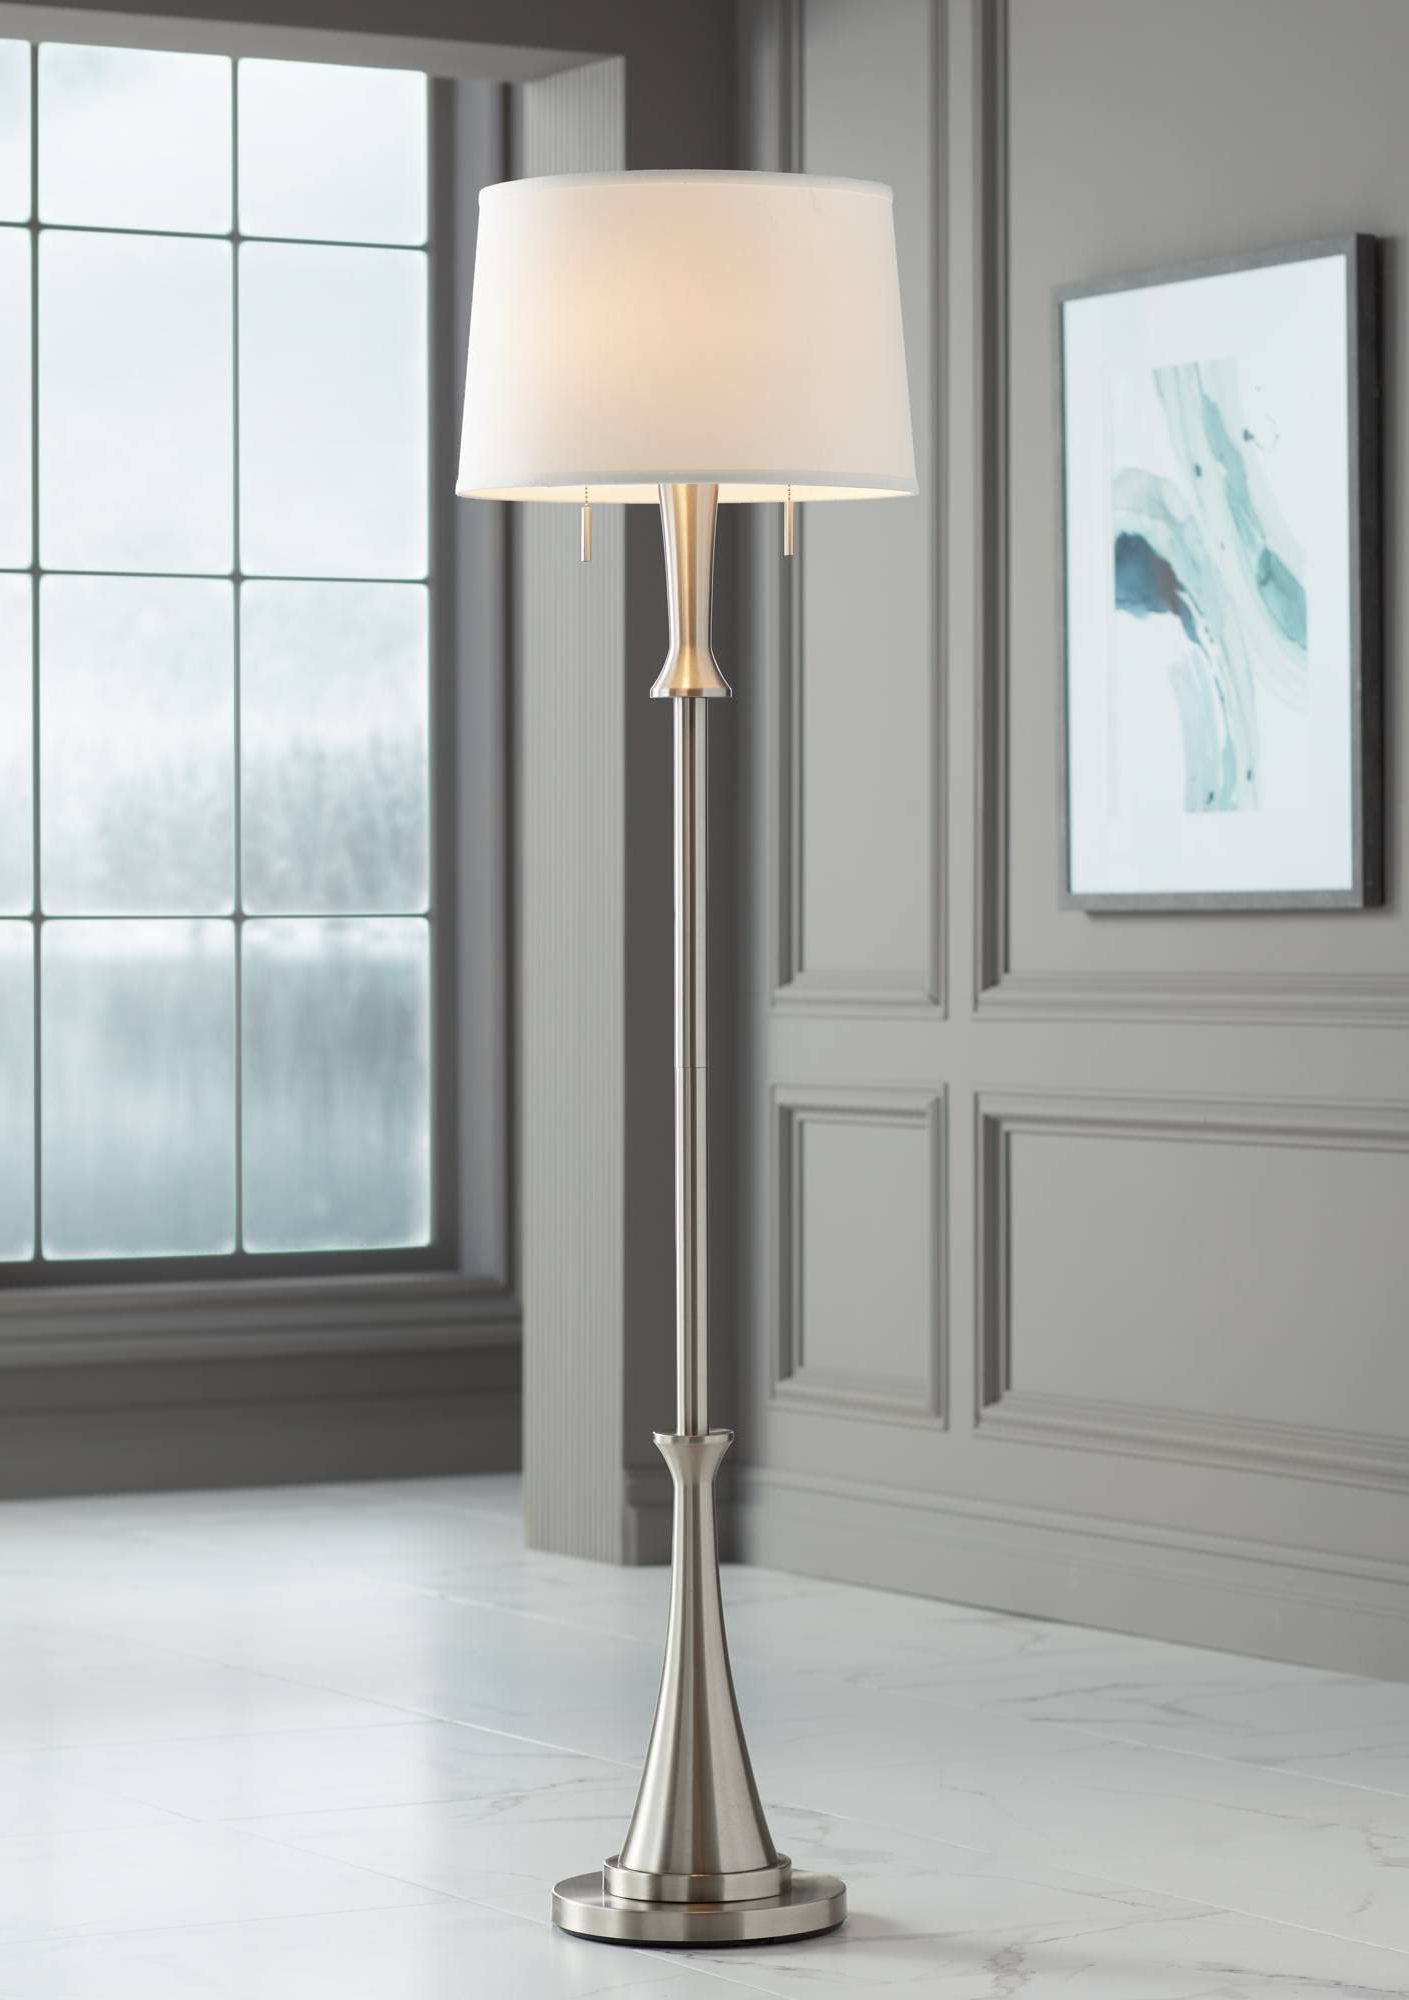 2019 360 Lighting Karl Modern Industrial Floor Lamp Standing 63.75" Tall Brushed  Nickel Silver Classic Metal White With Brushed Nickel Standing Lamps (Photo 1 of 15)